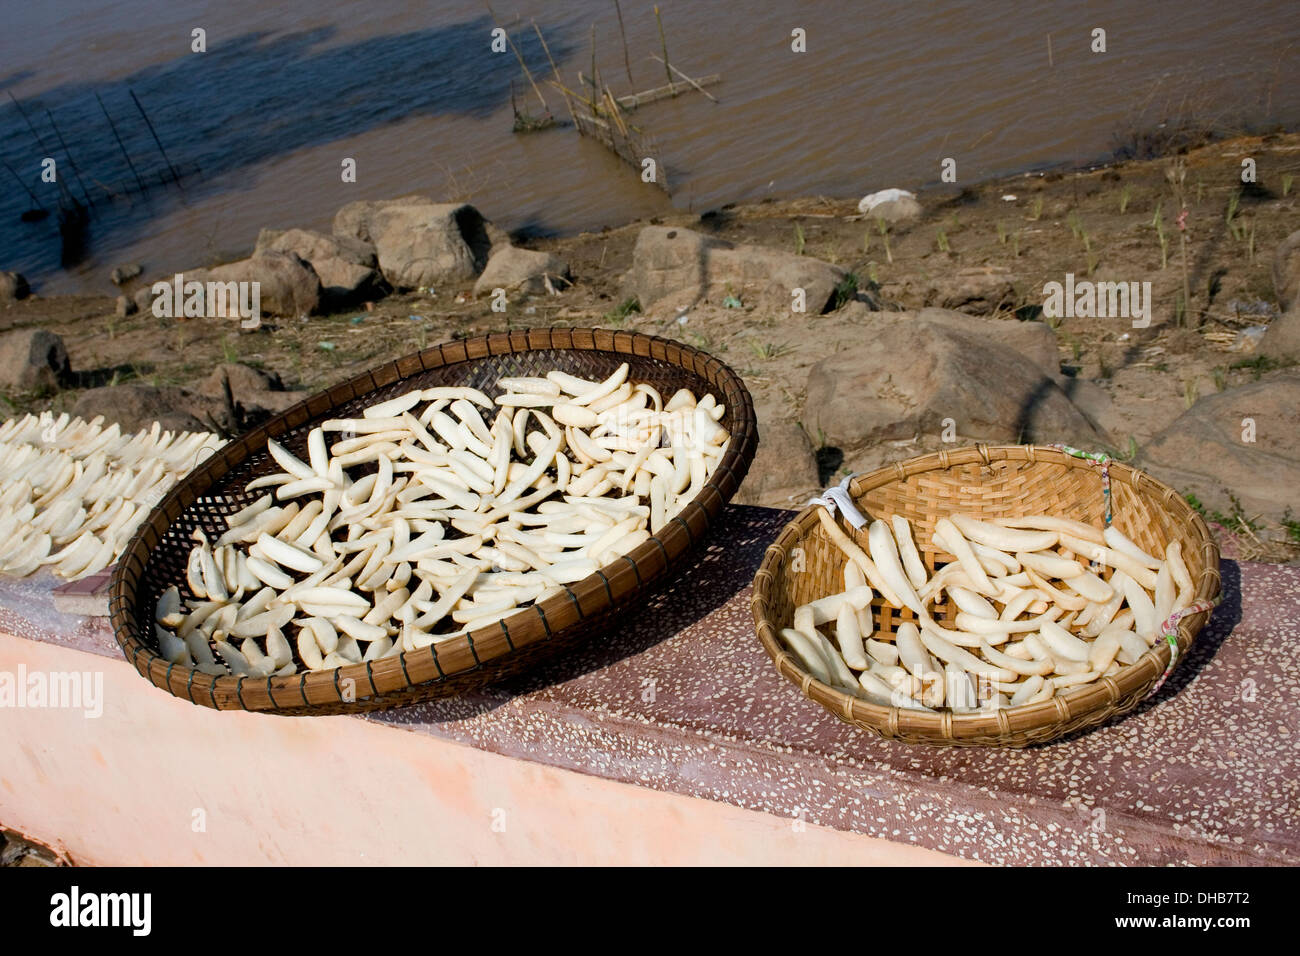 La nourriture est le séchage dans des paniers près de la rive du Mékong dans la région de Kampong Cham, au Cambodge. Banque D'Images